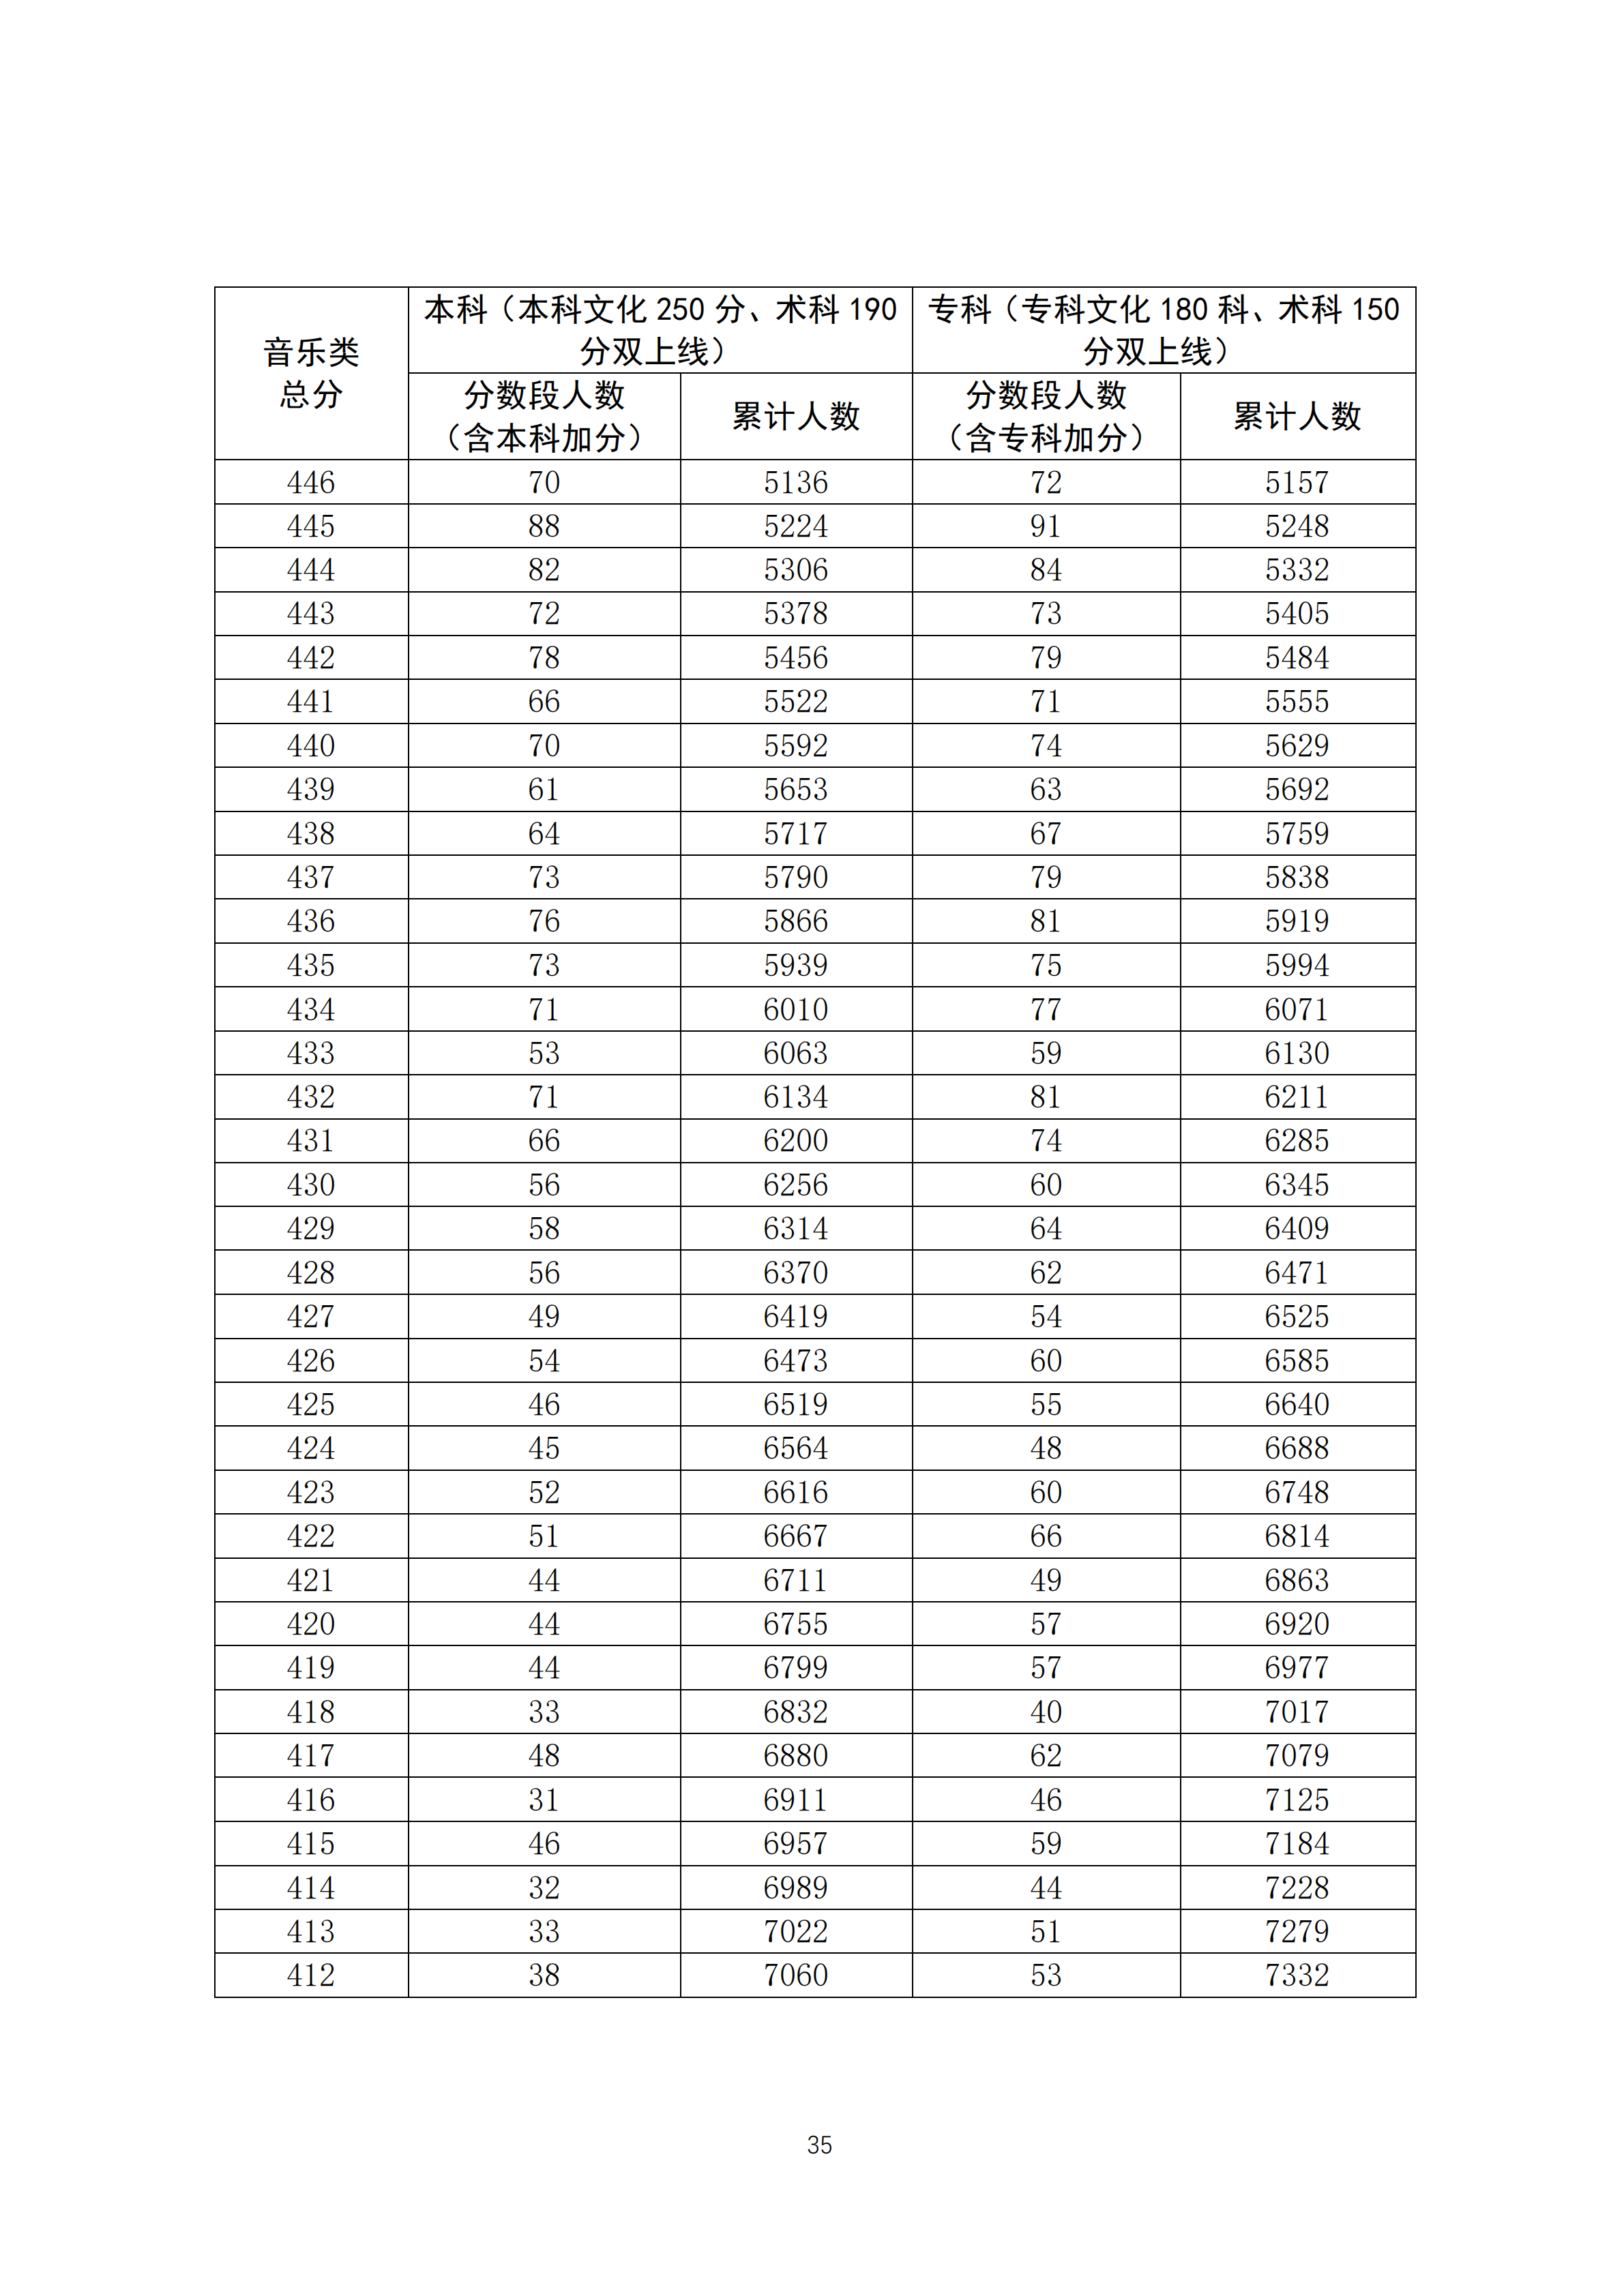 2020广东高考音乐类成绩排名